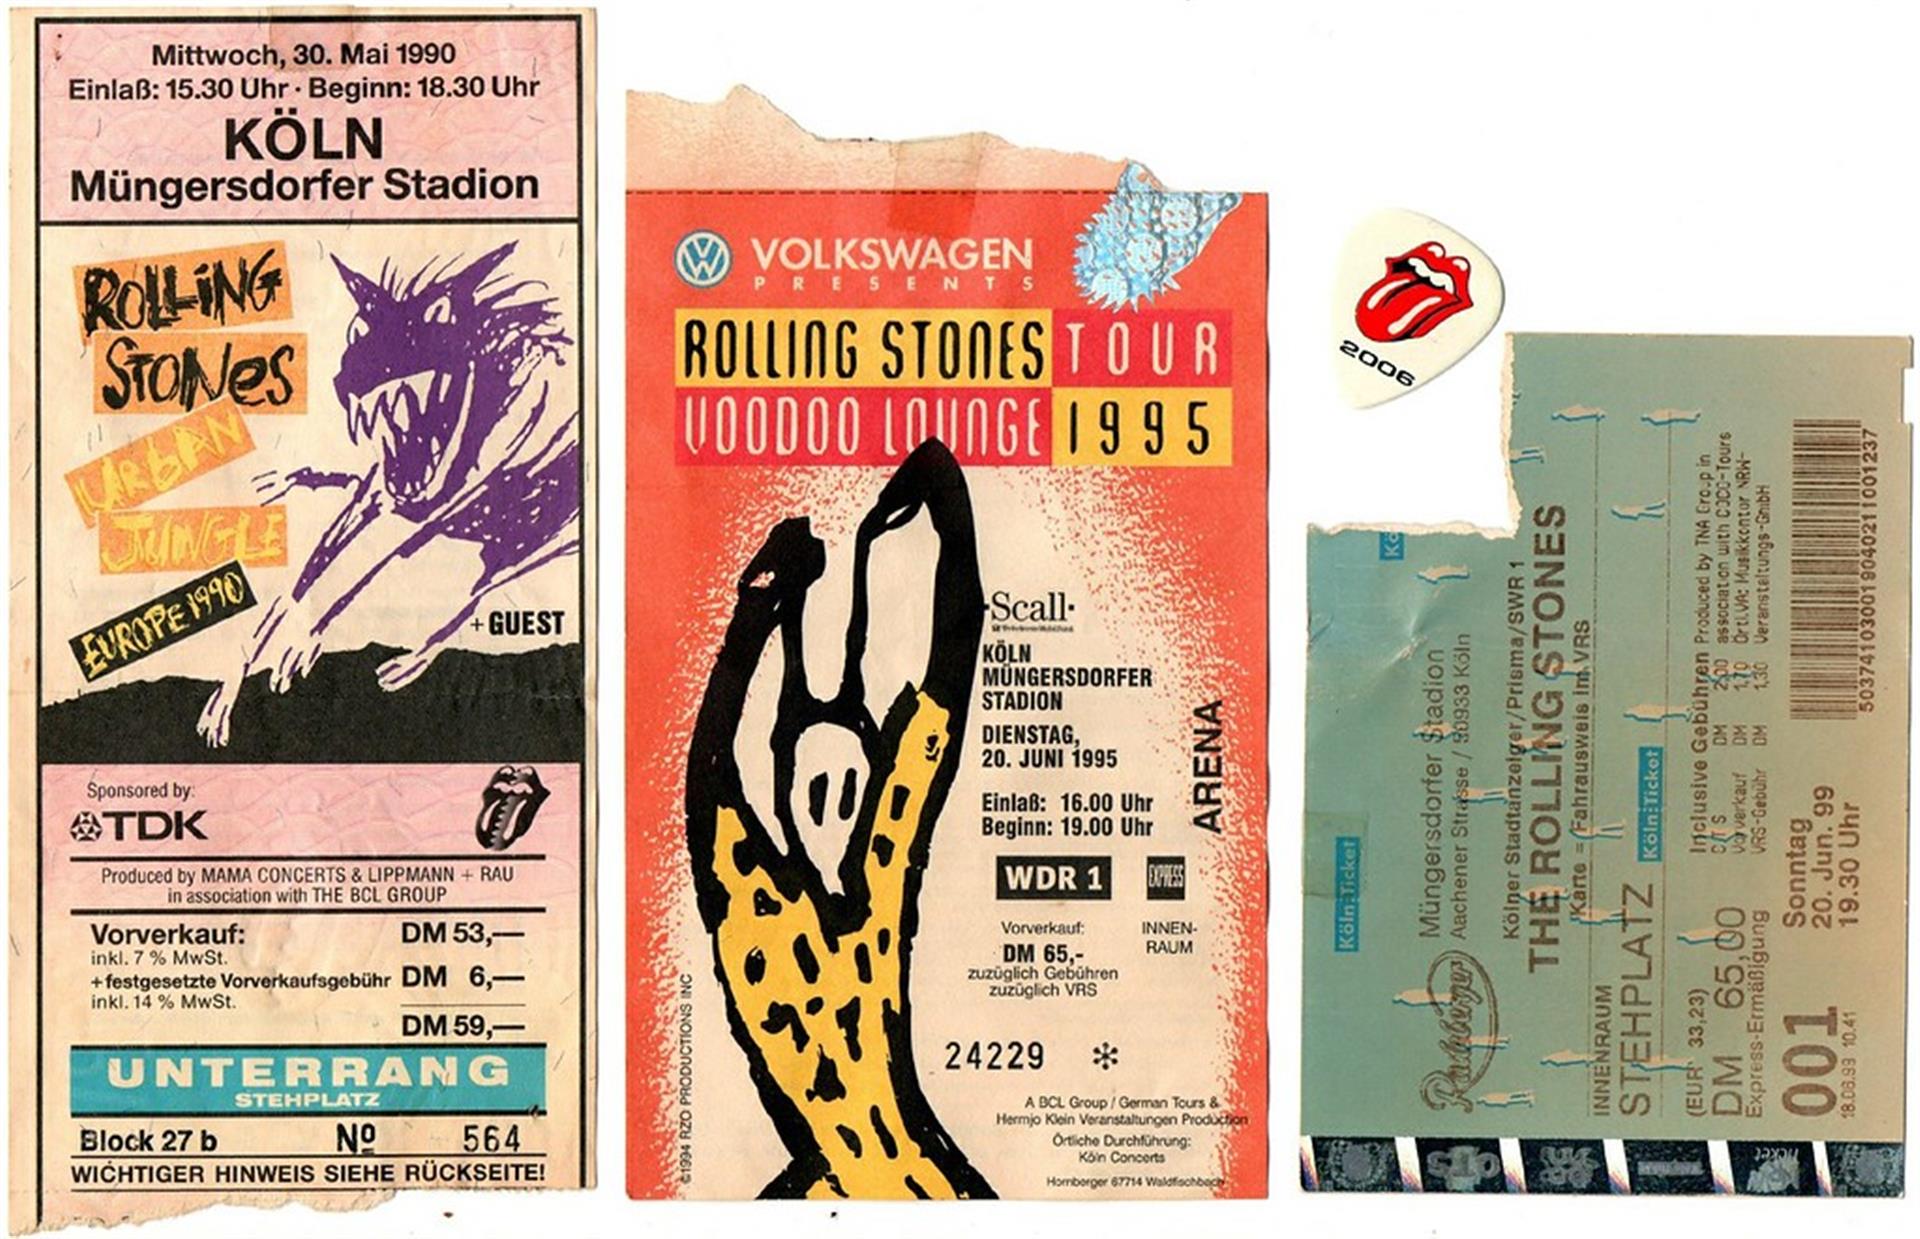 Eintrittskarten zu Konzerten der 'Rolling Stones' im Müngersdorfer Stadion in Köln aus den Jahren 1990, 1995 und 1999. &copy; Knöchel, Franz-Josef / CC-BY-SA 3.0